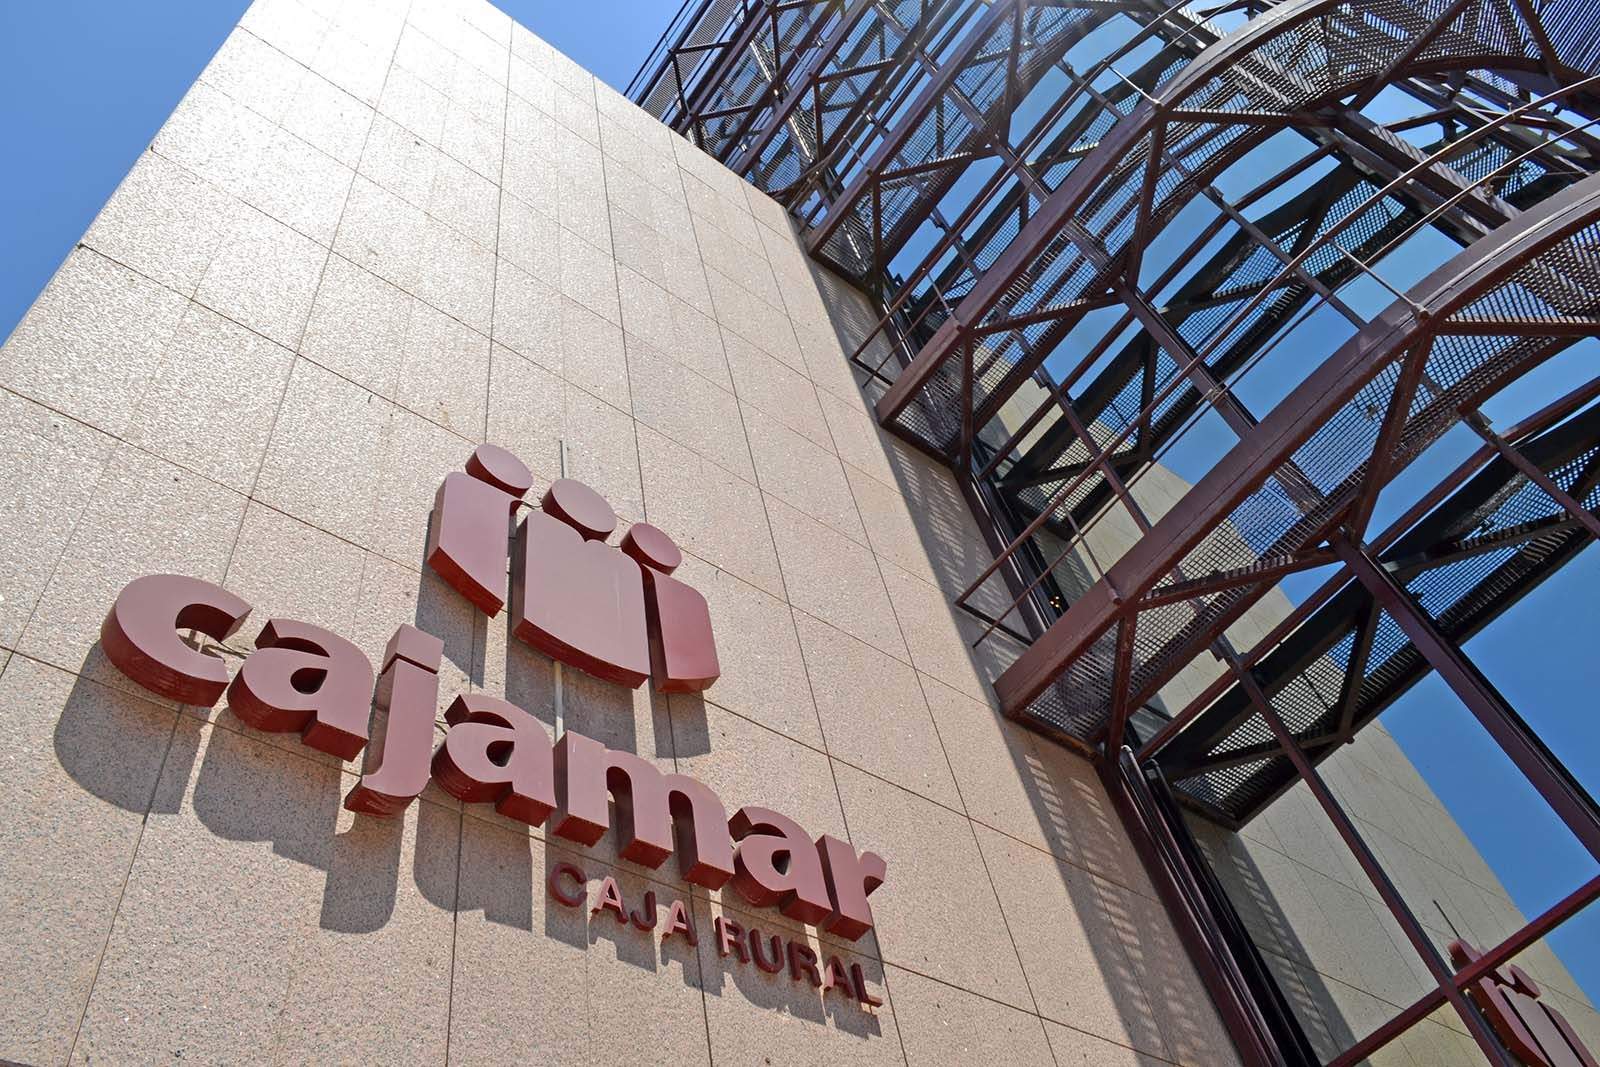 Los servicios financieros de Grupo Cajamar vuelven a la normalidad tras una incidencia técnica